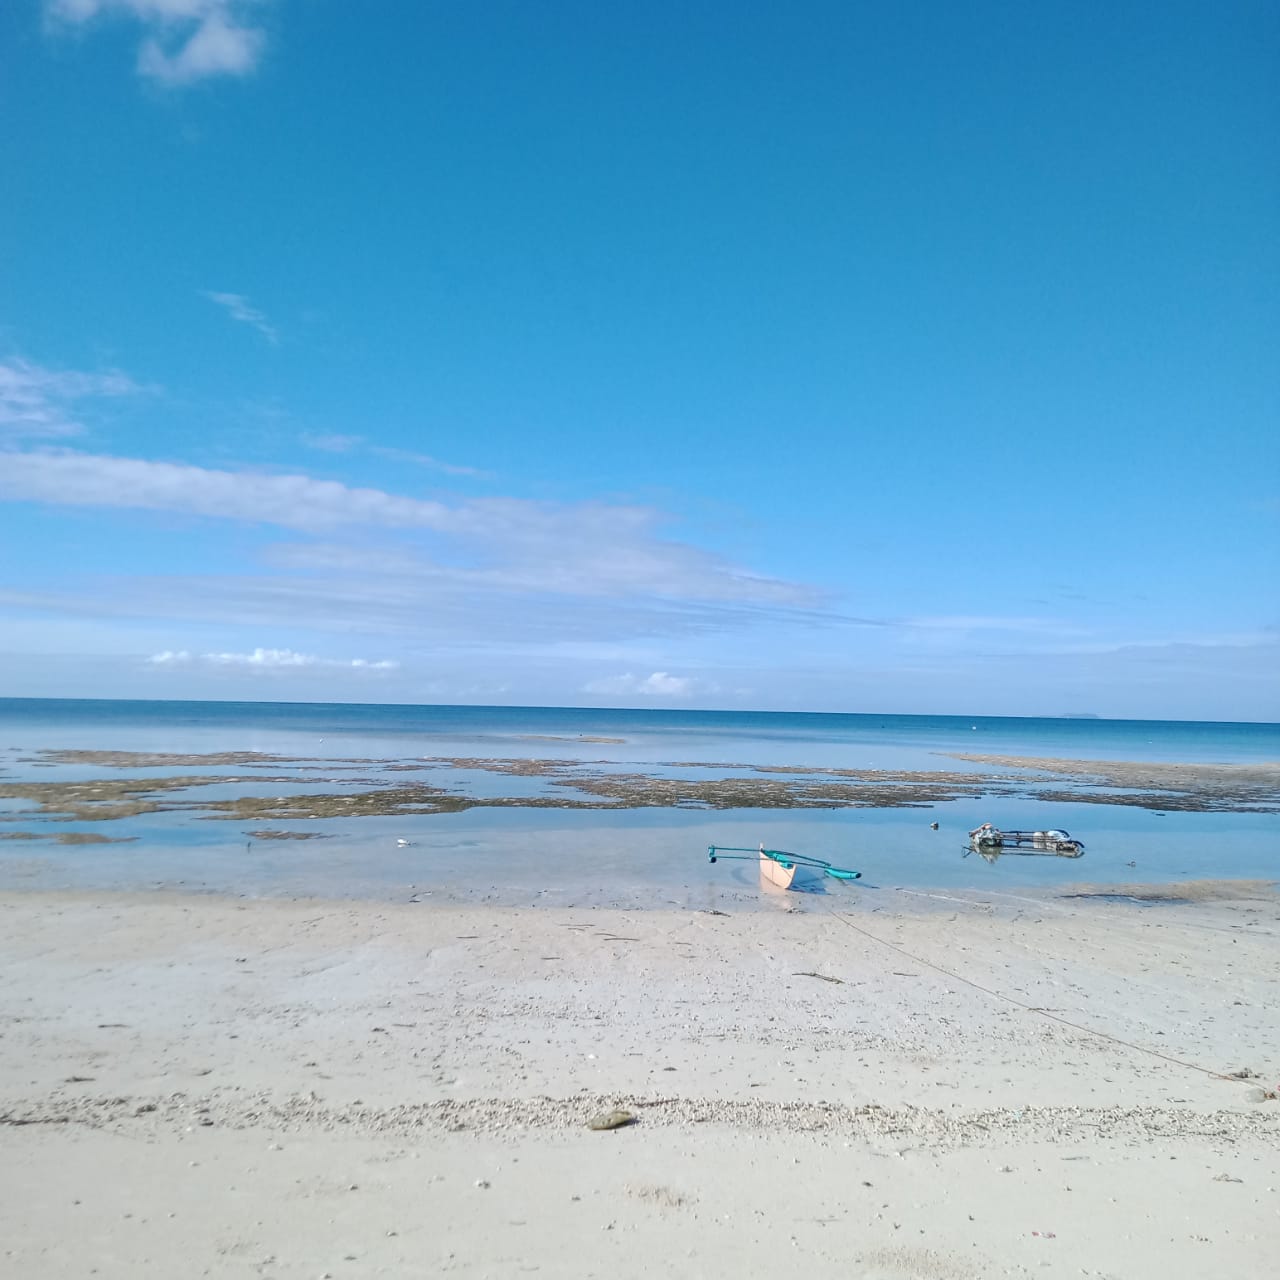 BEACH LOT FOR SALE IN SAN JUAN SIQUIJOR SIQ00126